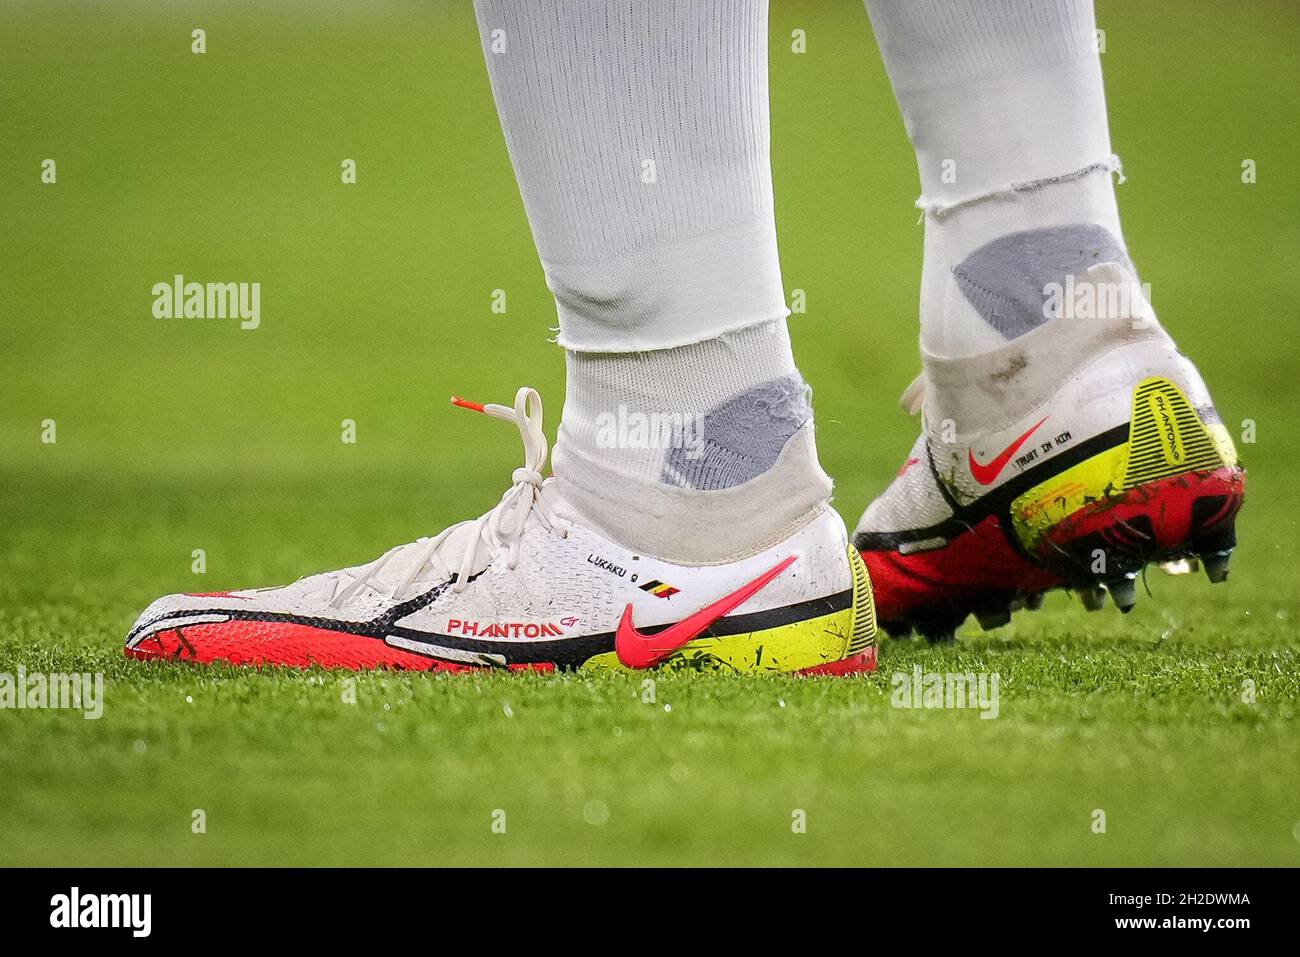 Londres, Royaume-Uni.20 octobre 2021.Les chaussures de football Nike  Phantom personnalisées de Romelu Lukaku de Chelsea affichant LUKAKU 9 et le  drapeau belge lors du match de la Ligue des champions de l'UEFA